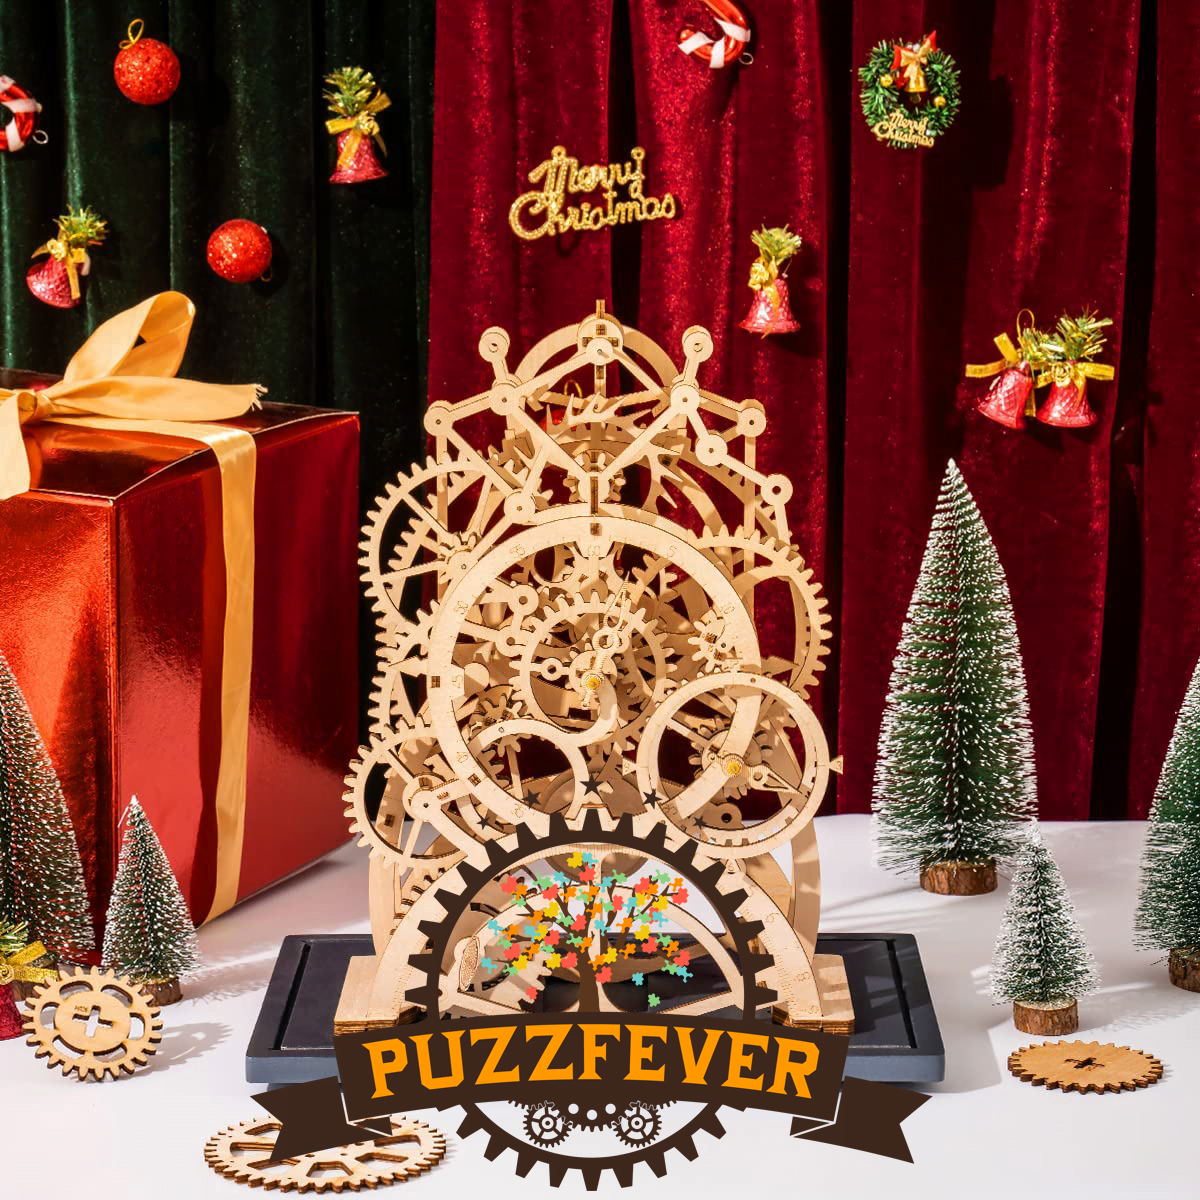 Une maquette robotime rokr comportant un puzzle en bois avec des engrenages et un arbre de Noël.